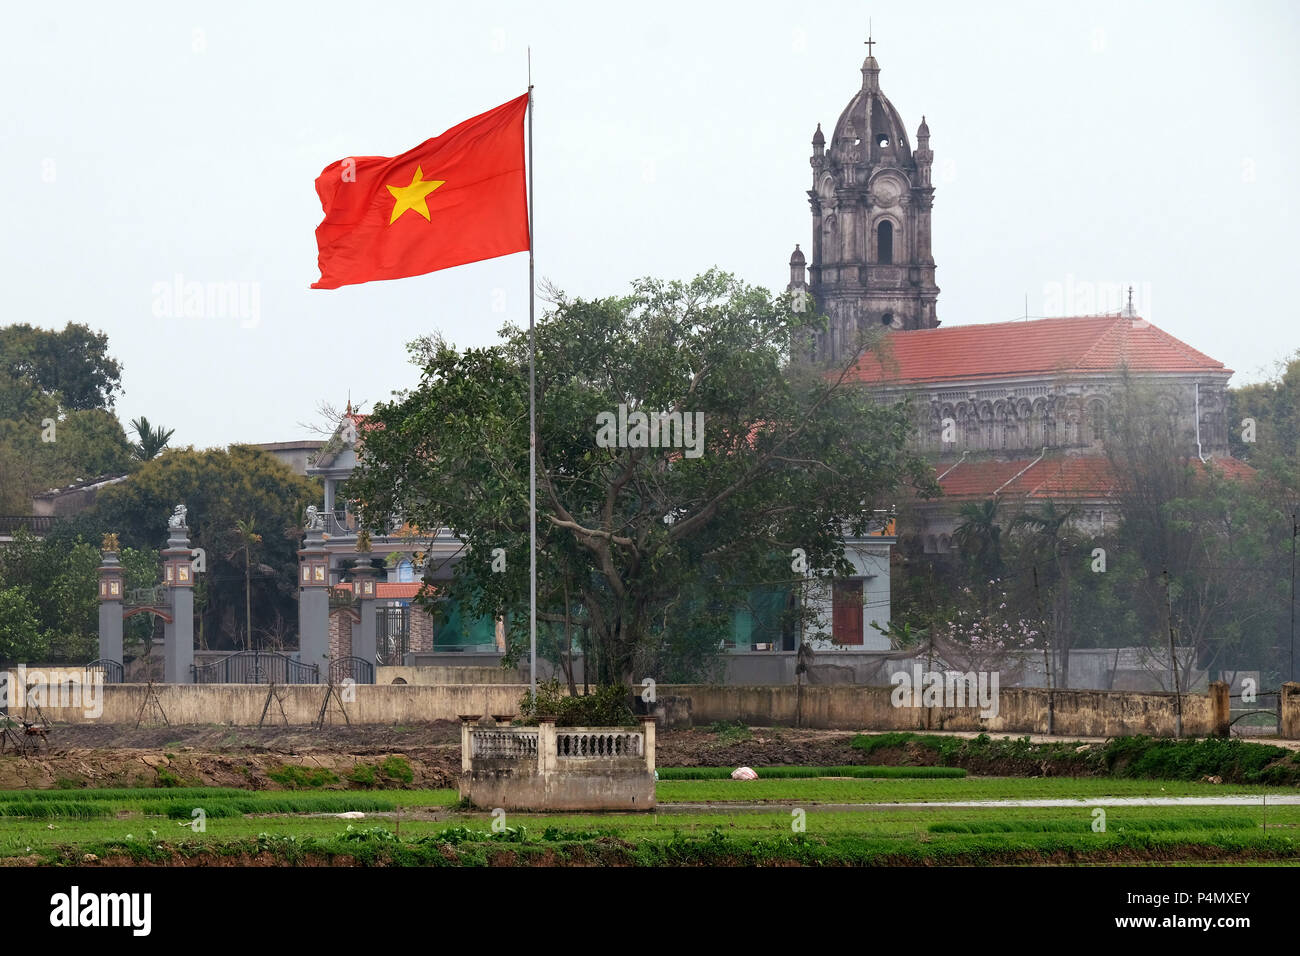 Vietnam Land Flagge und die katholische Kirche in einem Reisfeld in Nam Dinh Provinz, Vietnam - Landesfahne Vietnams und der Katholischen Kirche in einem Reisfeld in der Nam Dinh-Provinz, Vietnam Stockfoto